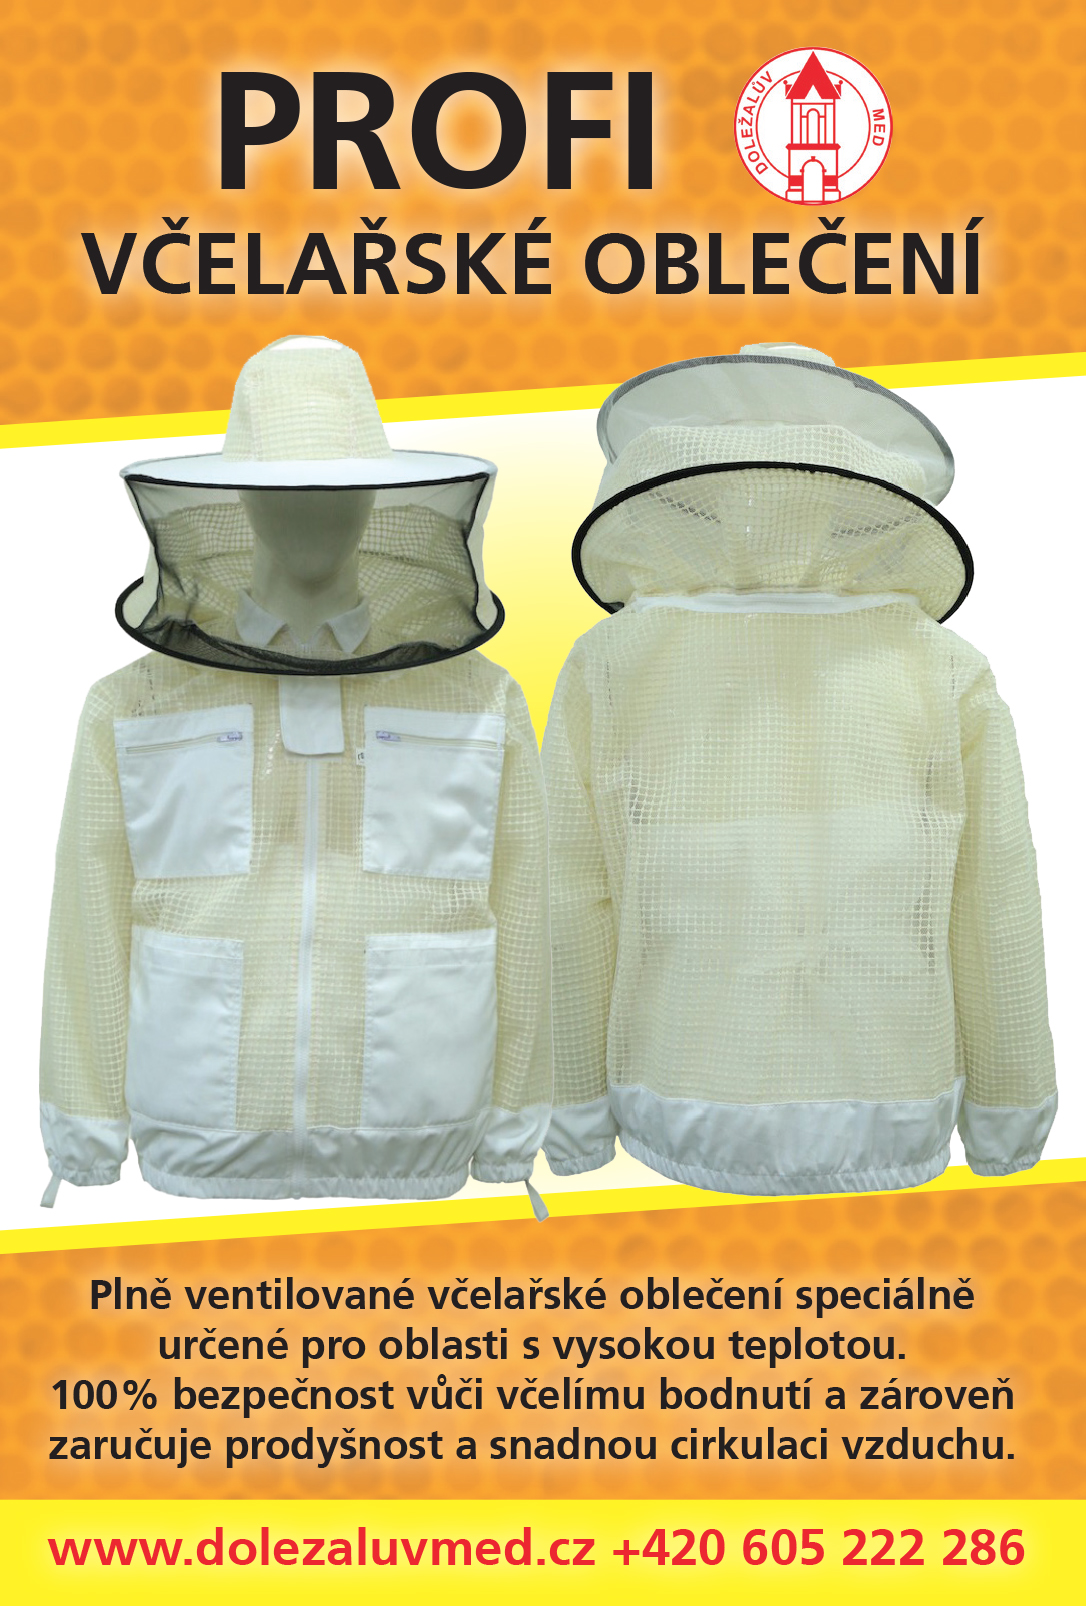 Profi včelařské oblečení